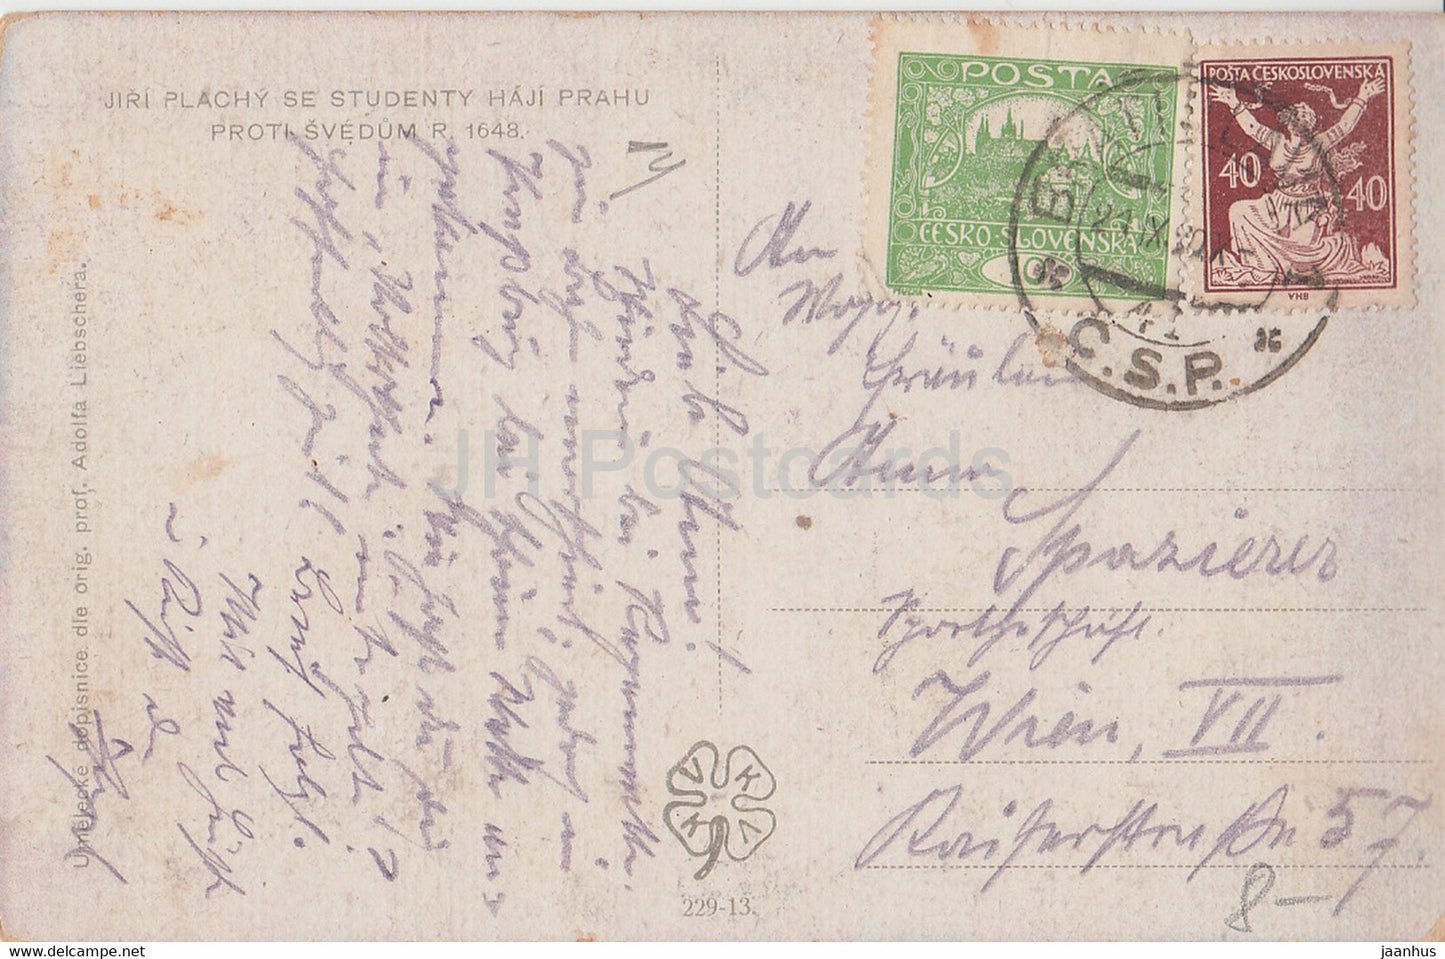 Jiri Plachy se Studenty Haji Prahu Proti Svedum 1648 - carte postale ancienne - Tchécoslovaquie - République tchèque - utilisé